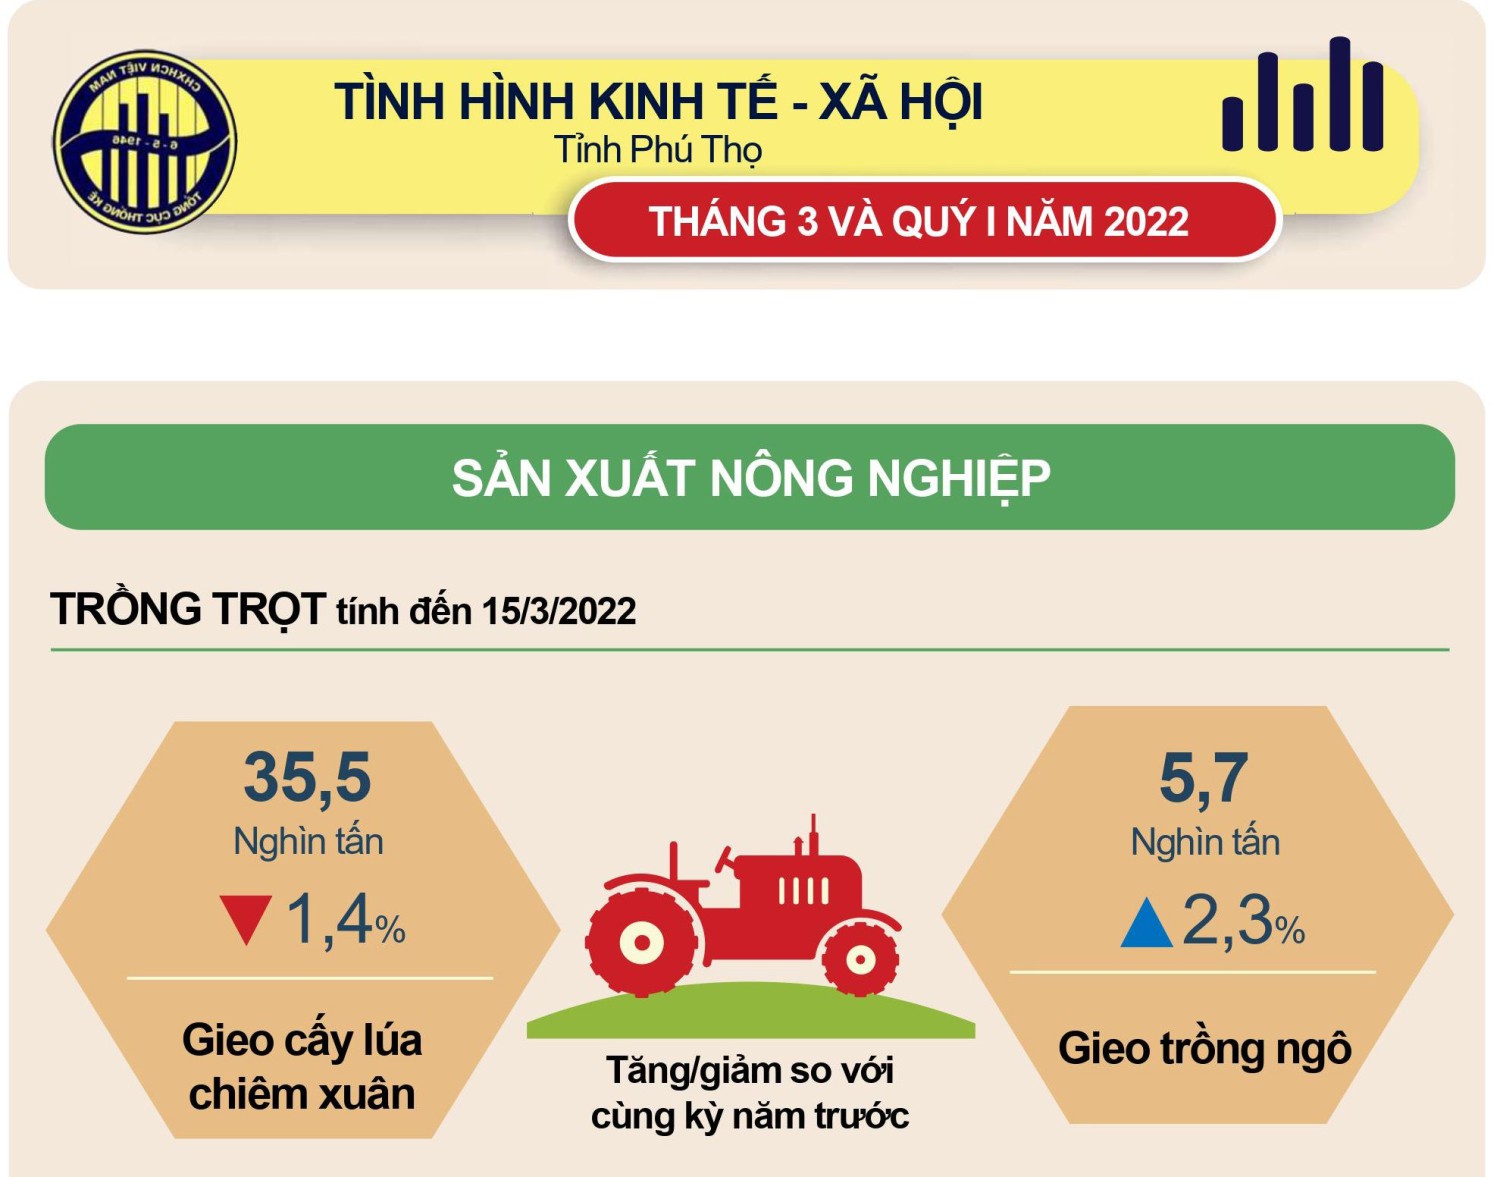 Tình hình kinh tế - xã hội quý 1 năm 2022 tỉnh Phú Thọ